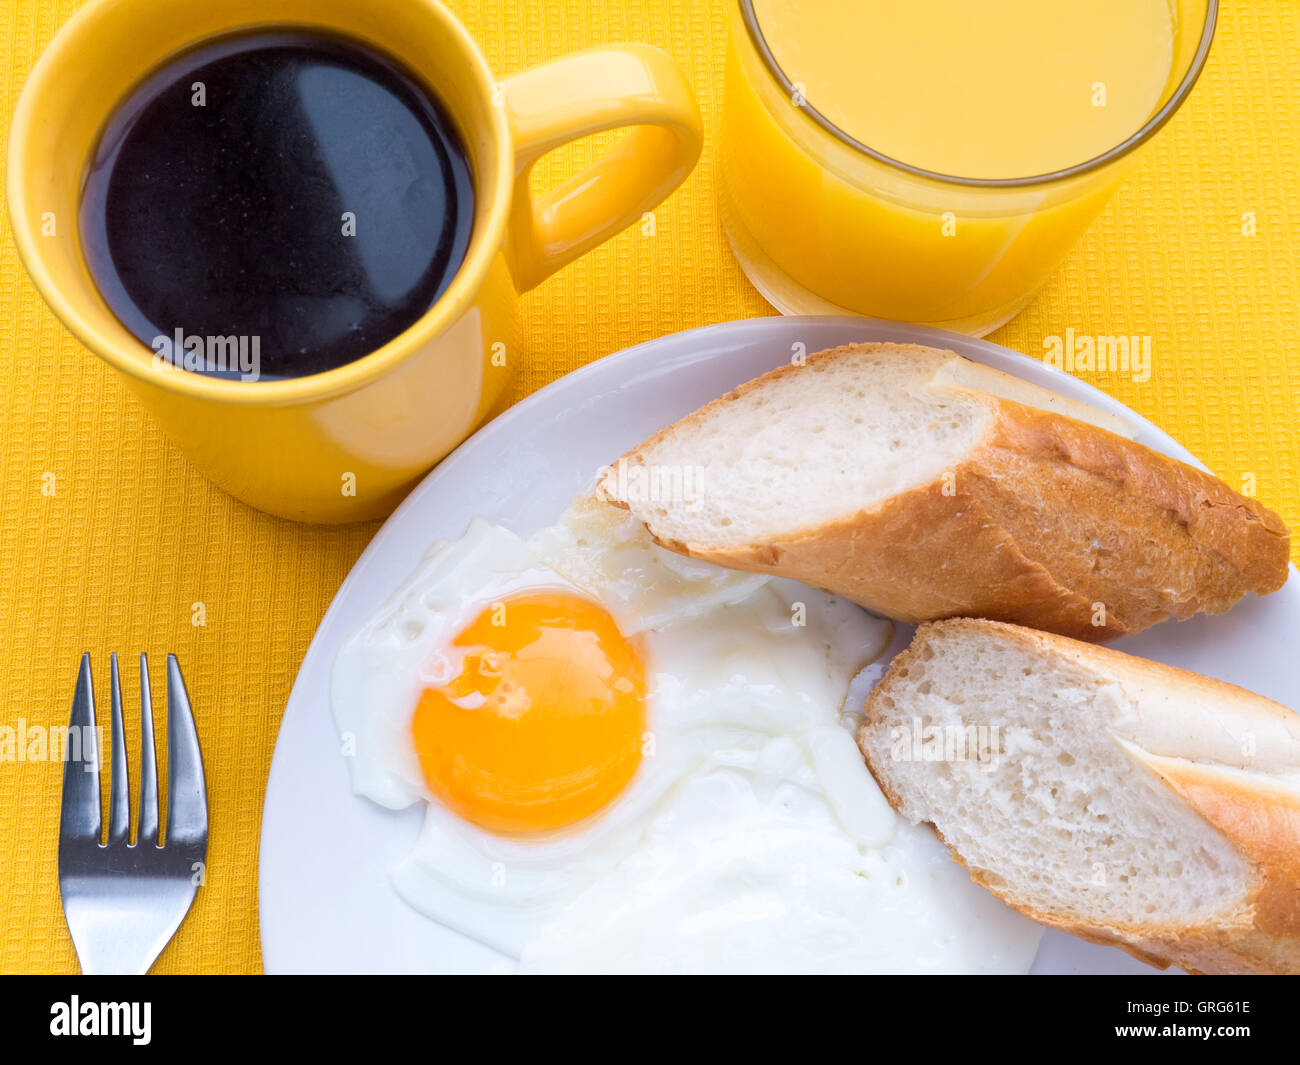 Les œufs, le café et le jus d'orange le petit-déjeuner sur la nappe jaune Vue de dessus Banque D'Images